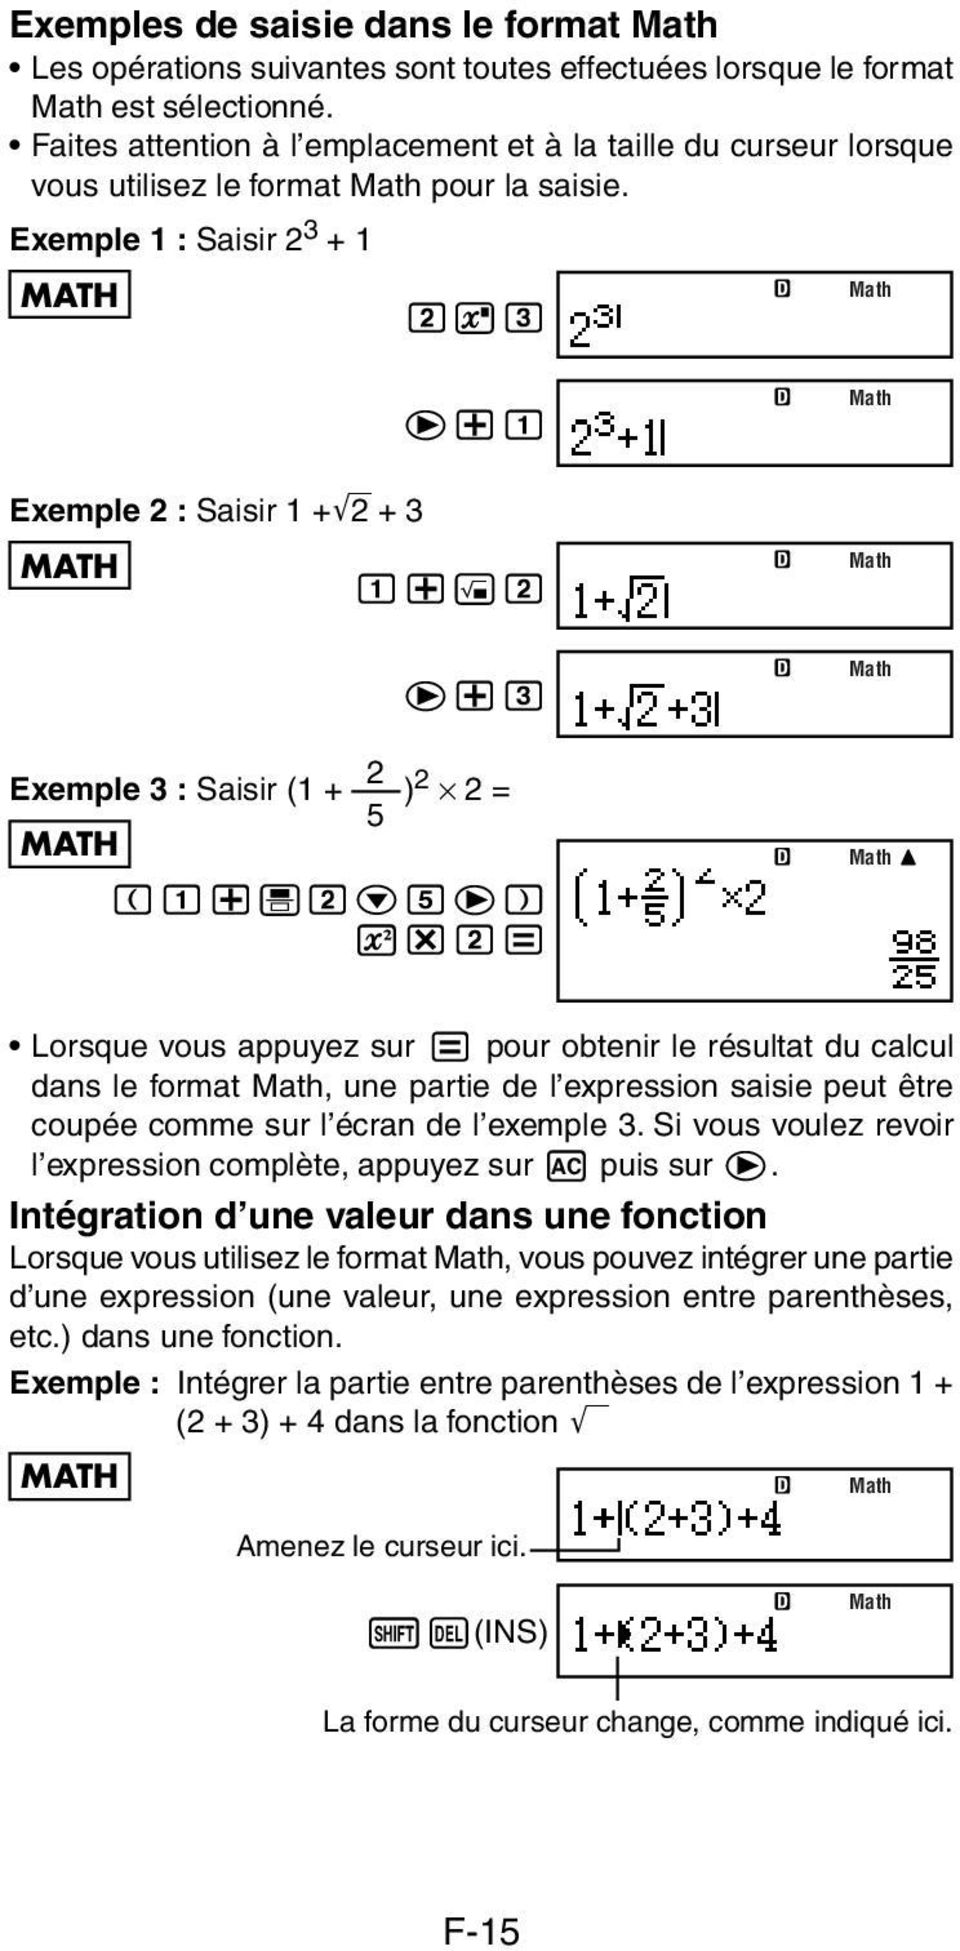 2 e+3 2 Exemple 3 : Saisir (1 + ) 2 2 = 5 MATH (1+'2c5e) w*2= Math Math Math Math Lorsque vous appuyez sur = pour obtenir le résultat du calcul dans le format Math, une partie de l expression saisie